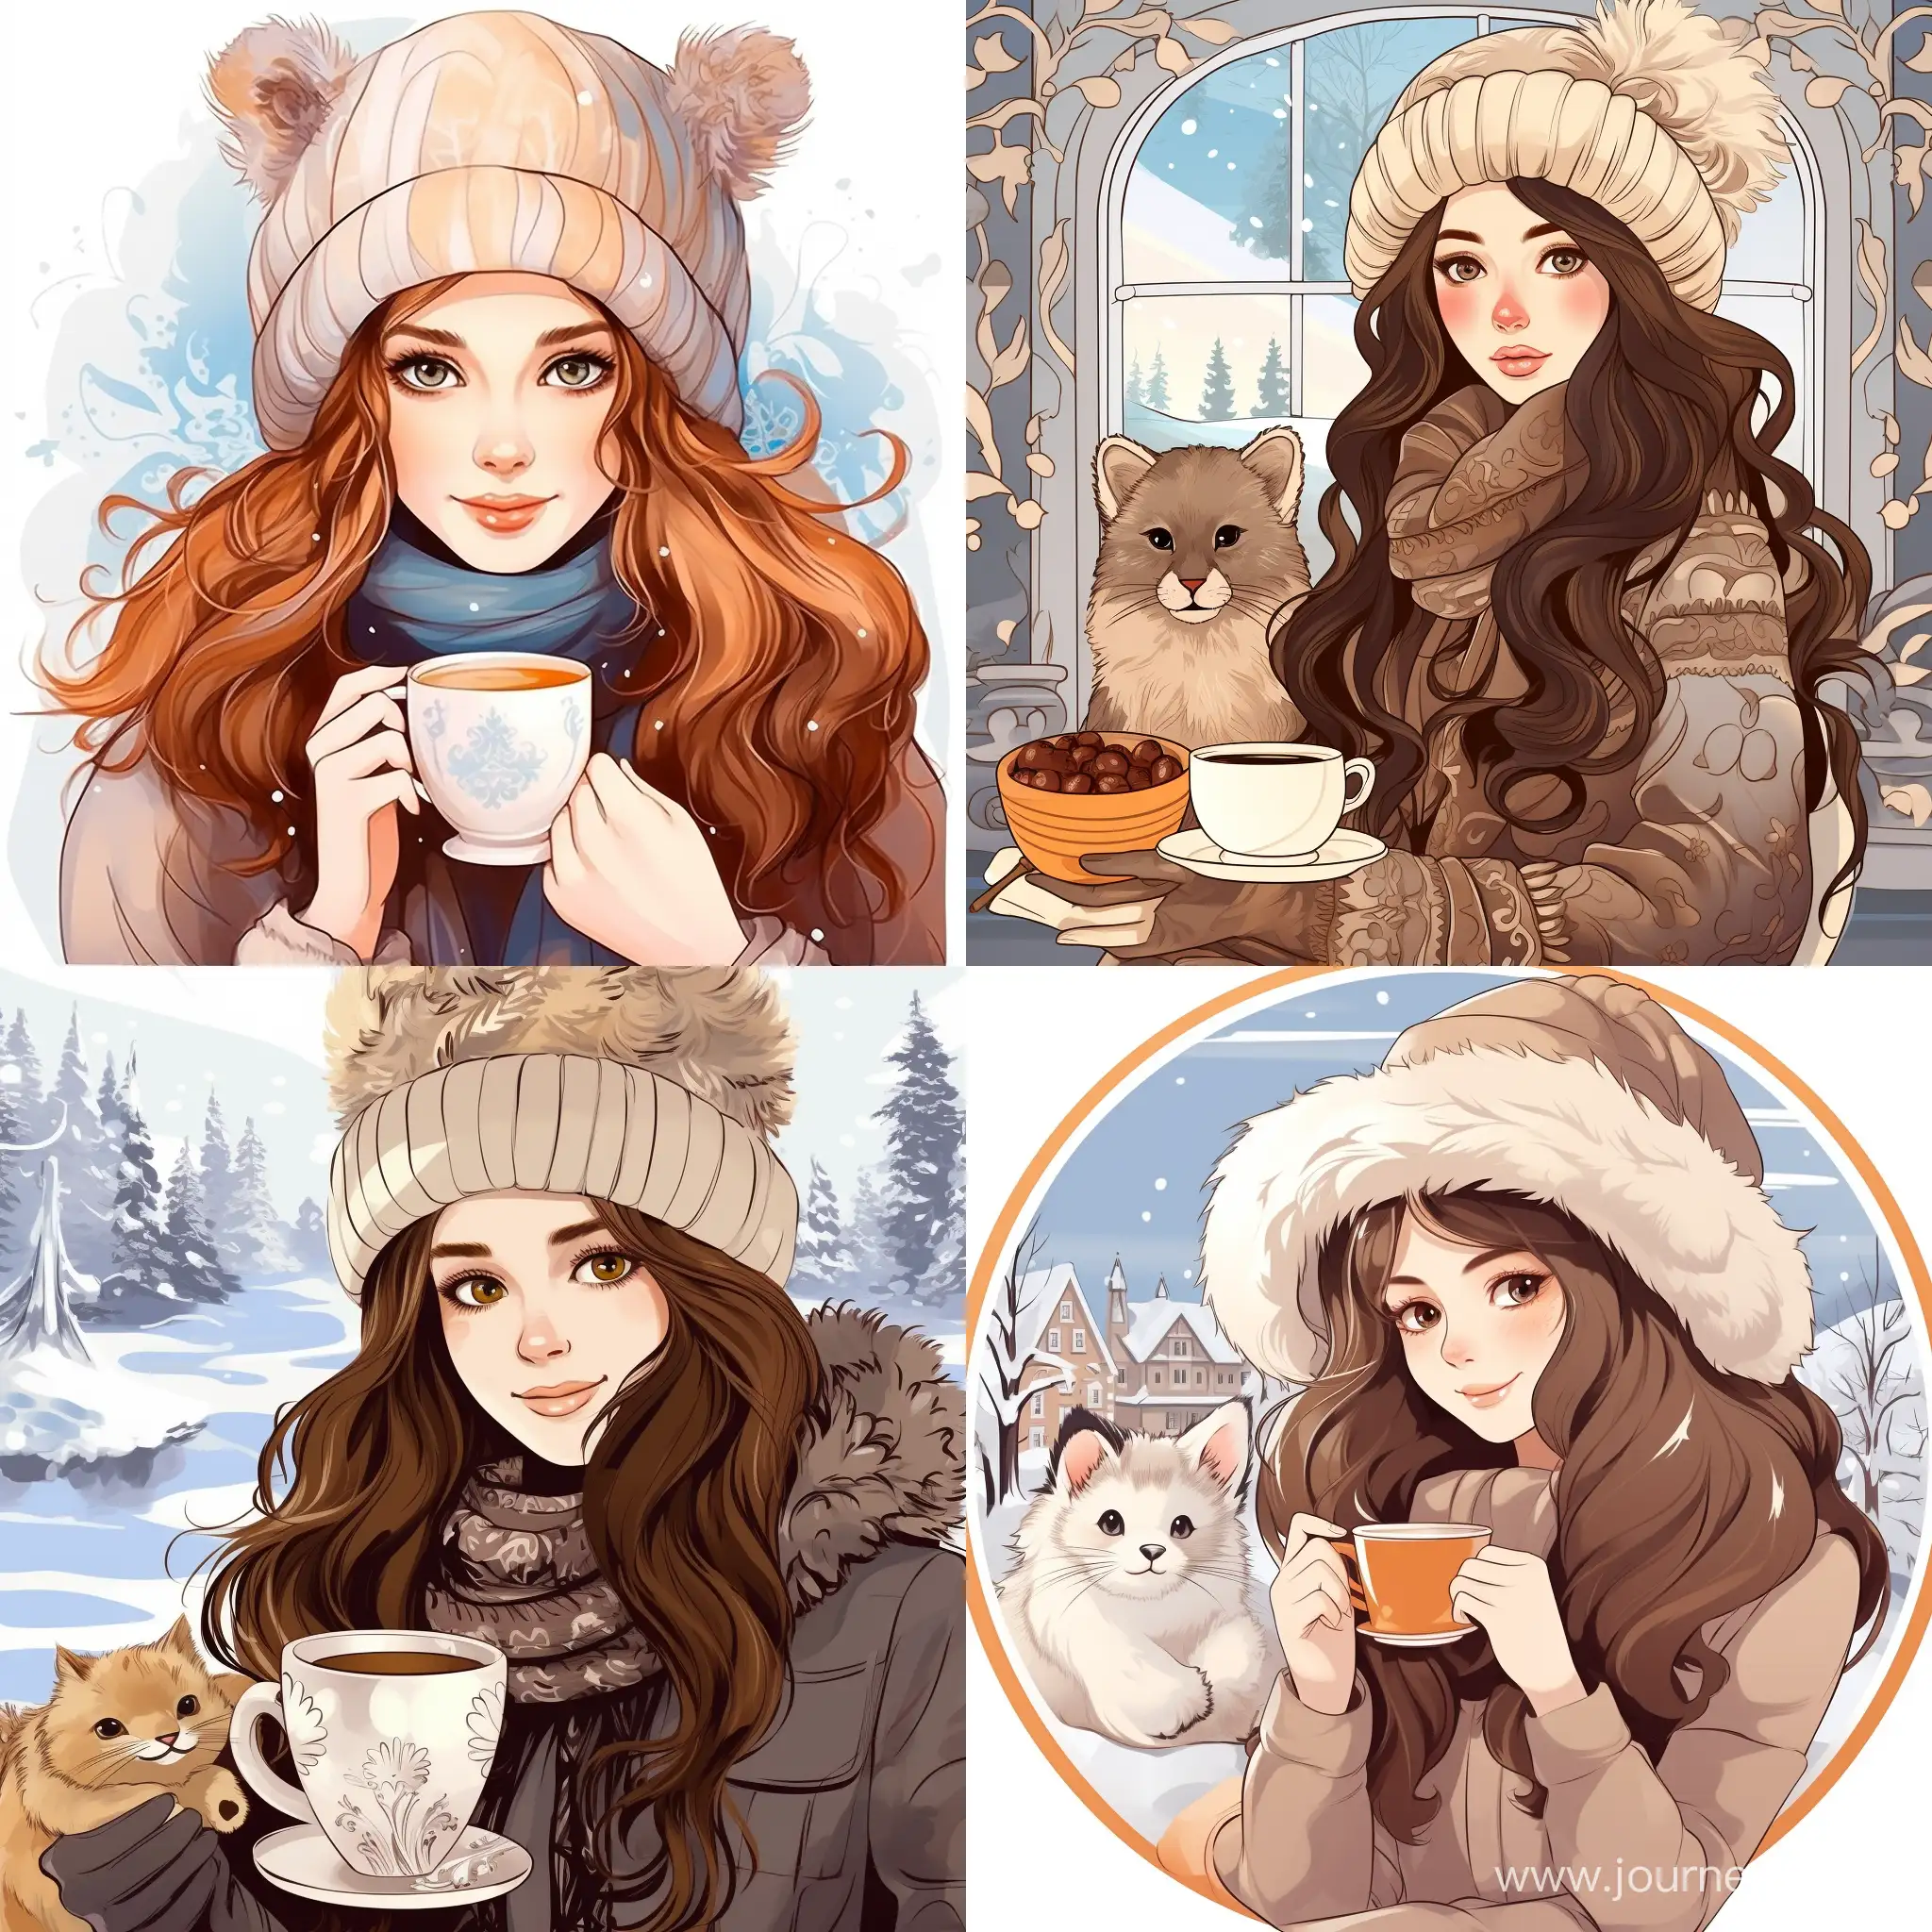 Charming-Winter-Beauty-Enjoying-Hot-Drink-in-Festive-Attire